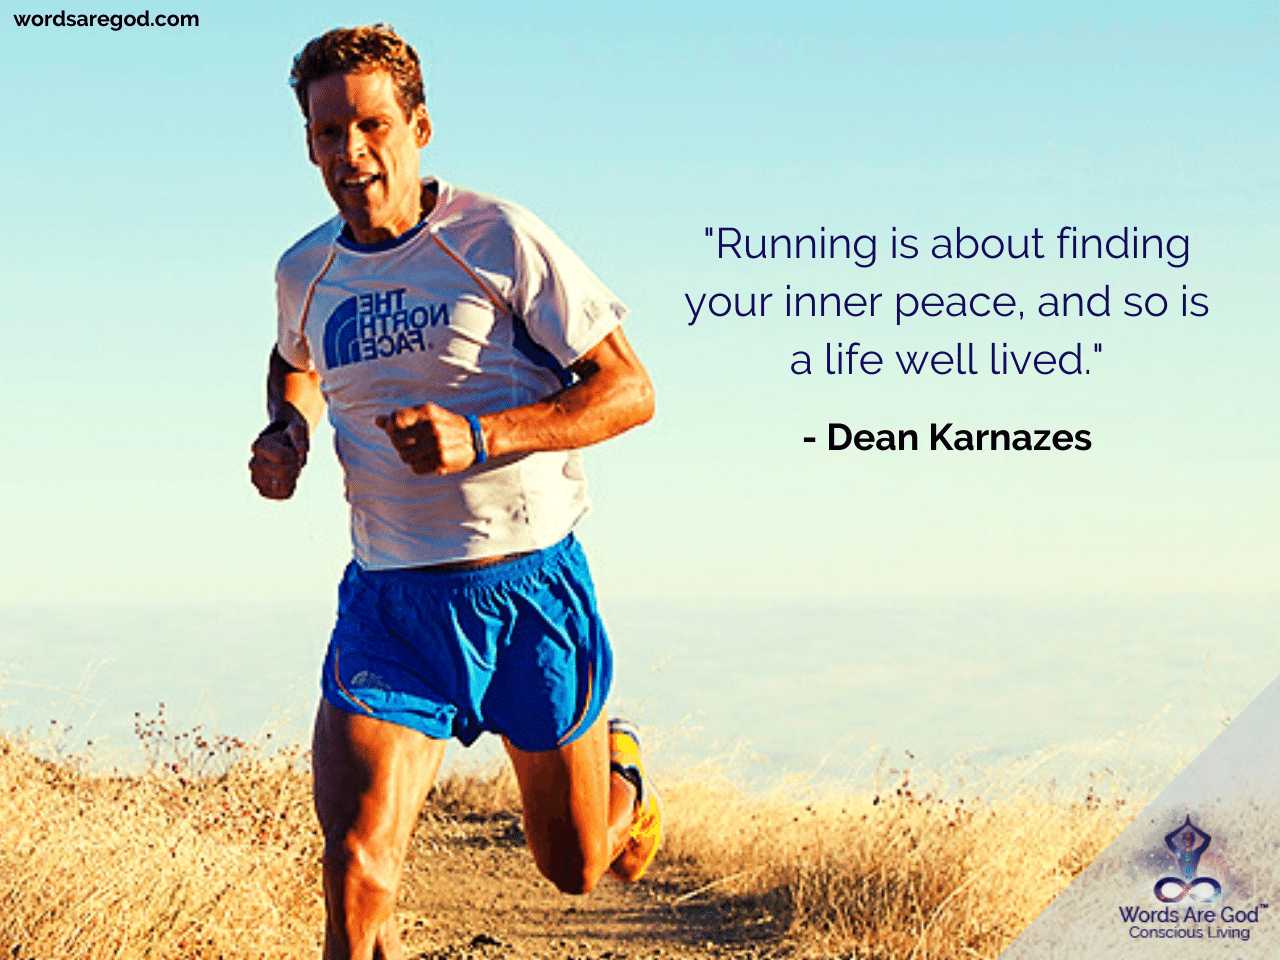 Dean Karnazes Best Quote